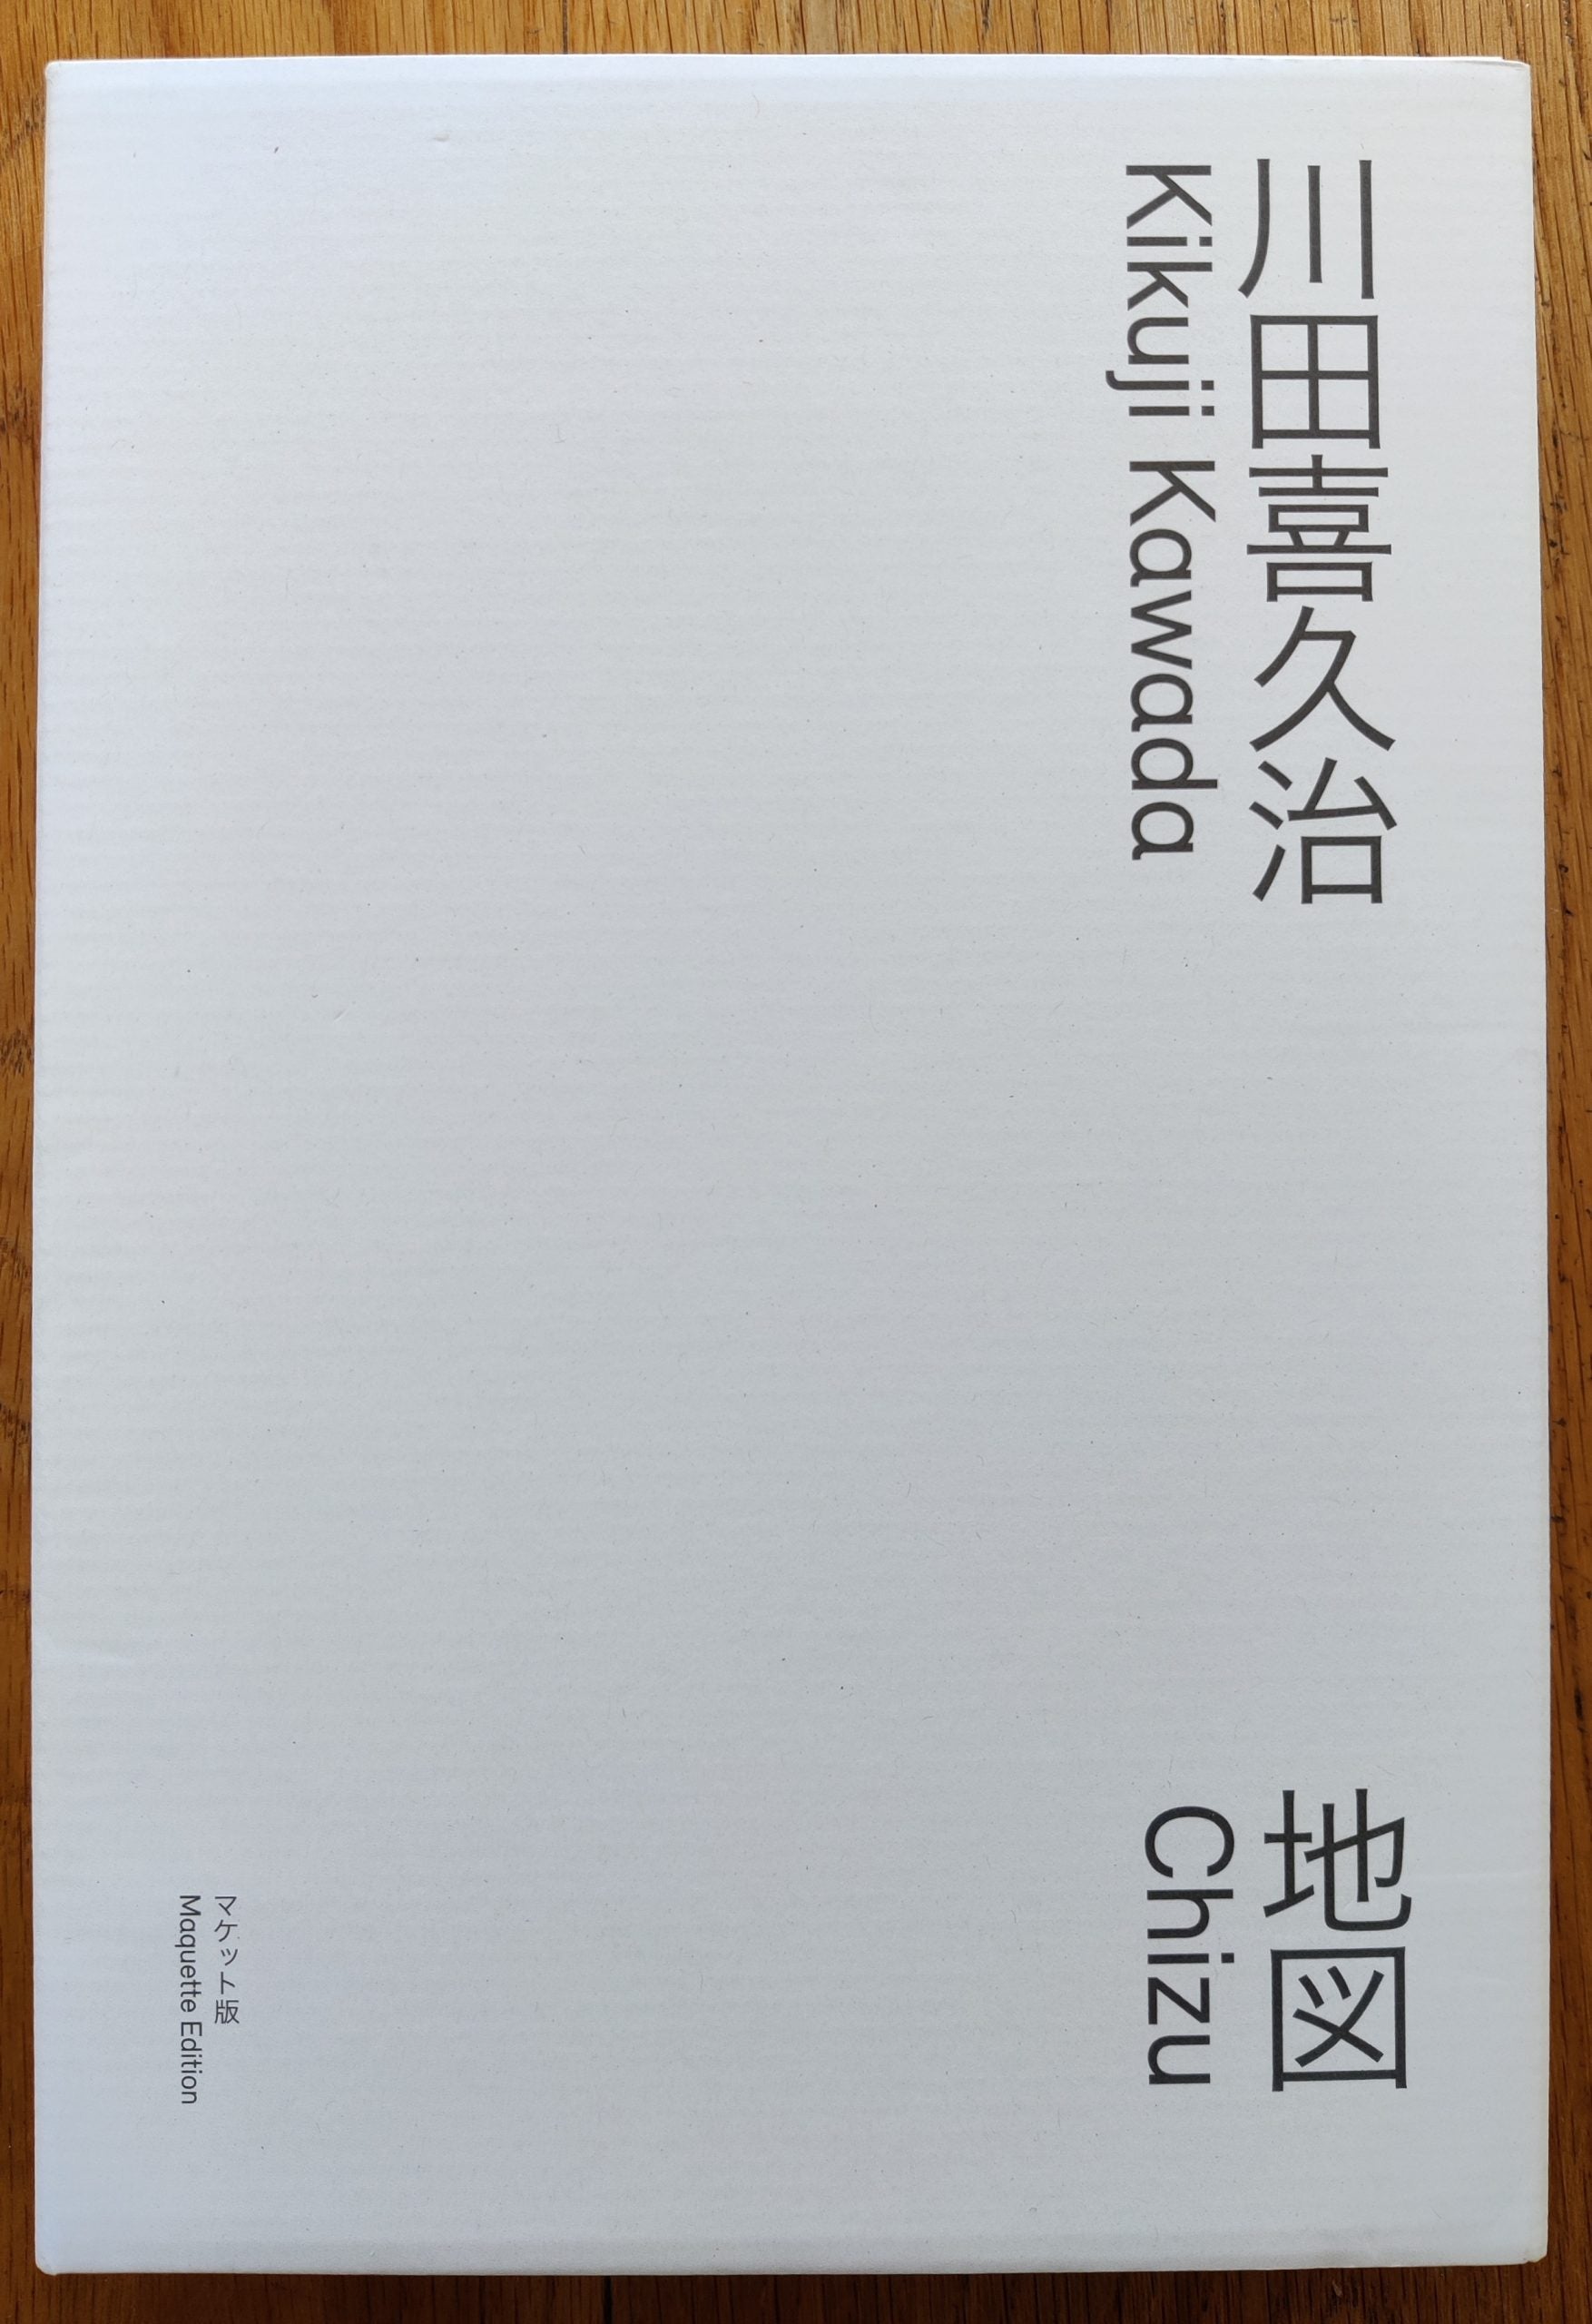 特価Kikuji Kawada: Chizu [Maquette Edition] - Japanese Signed Edition アート写真